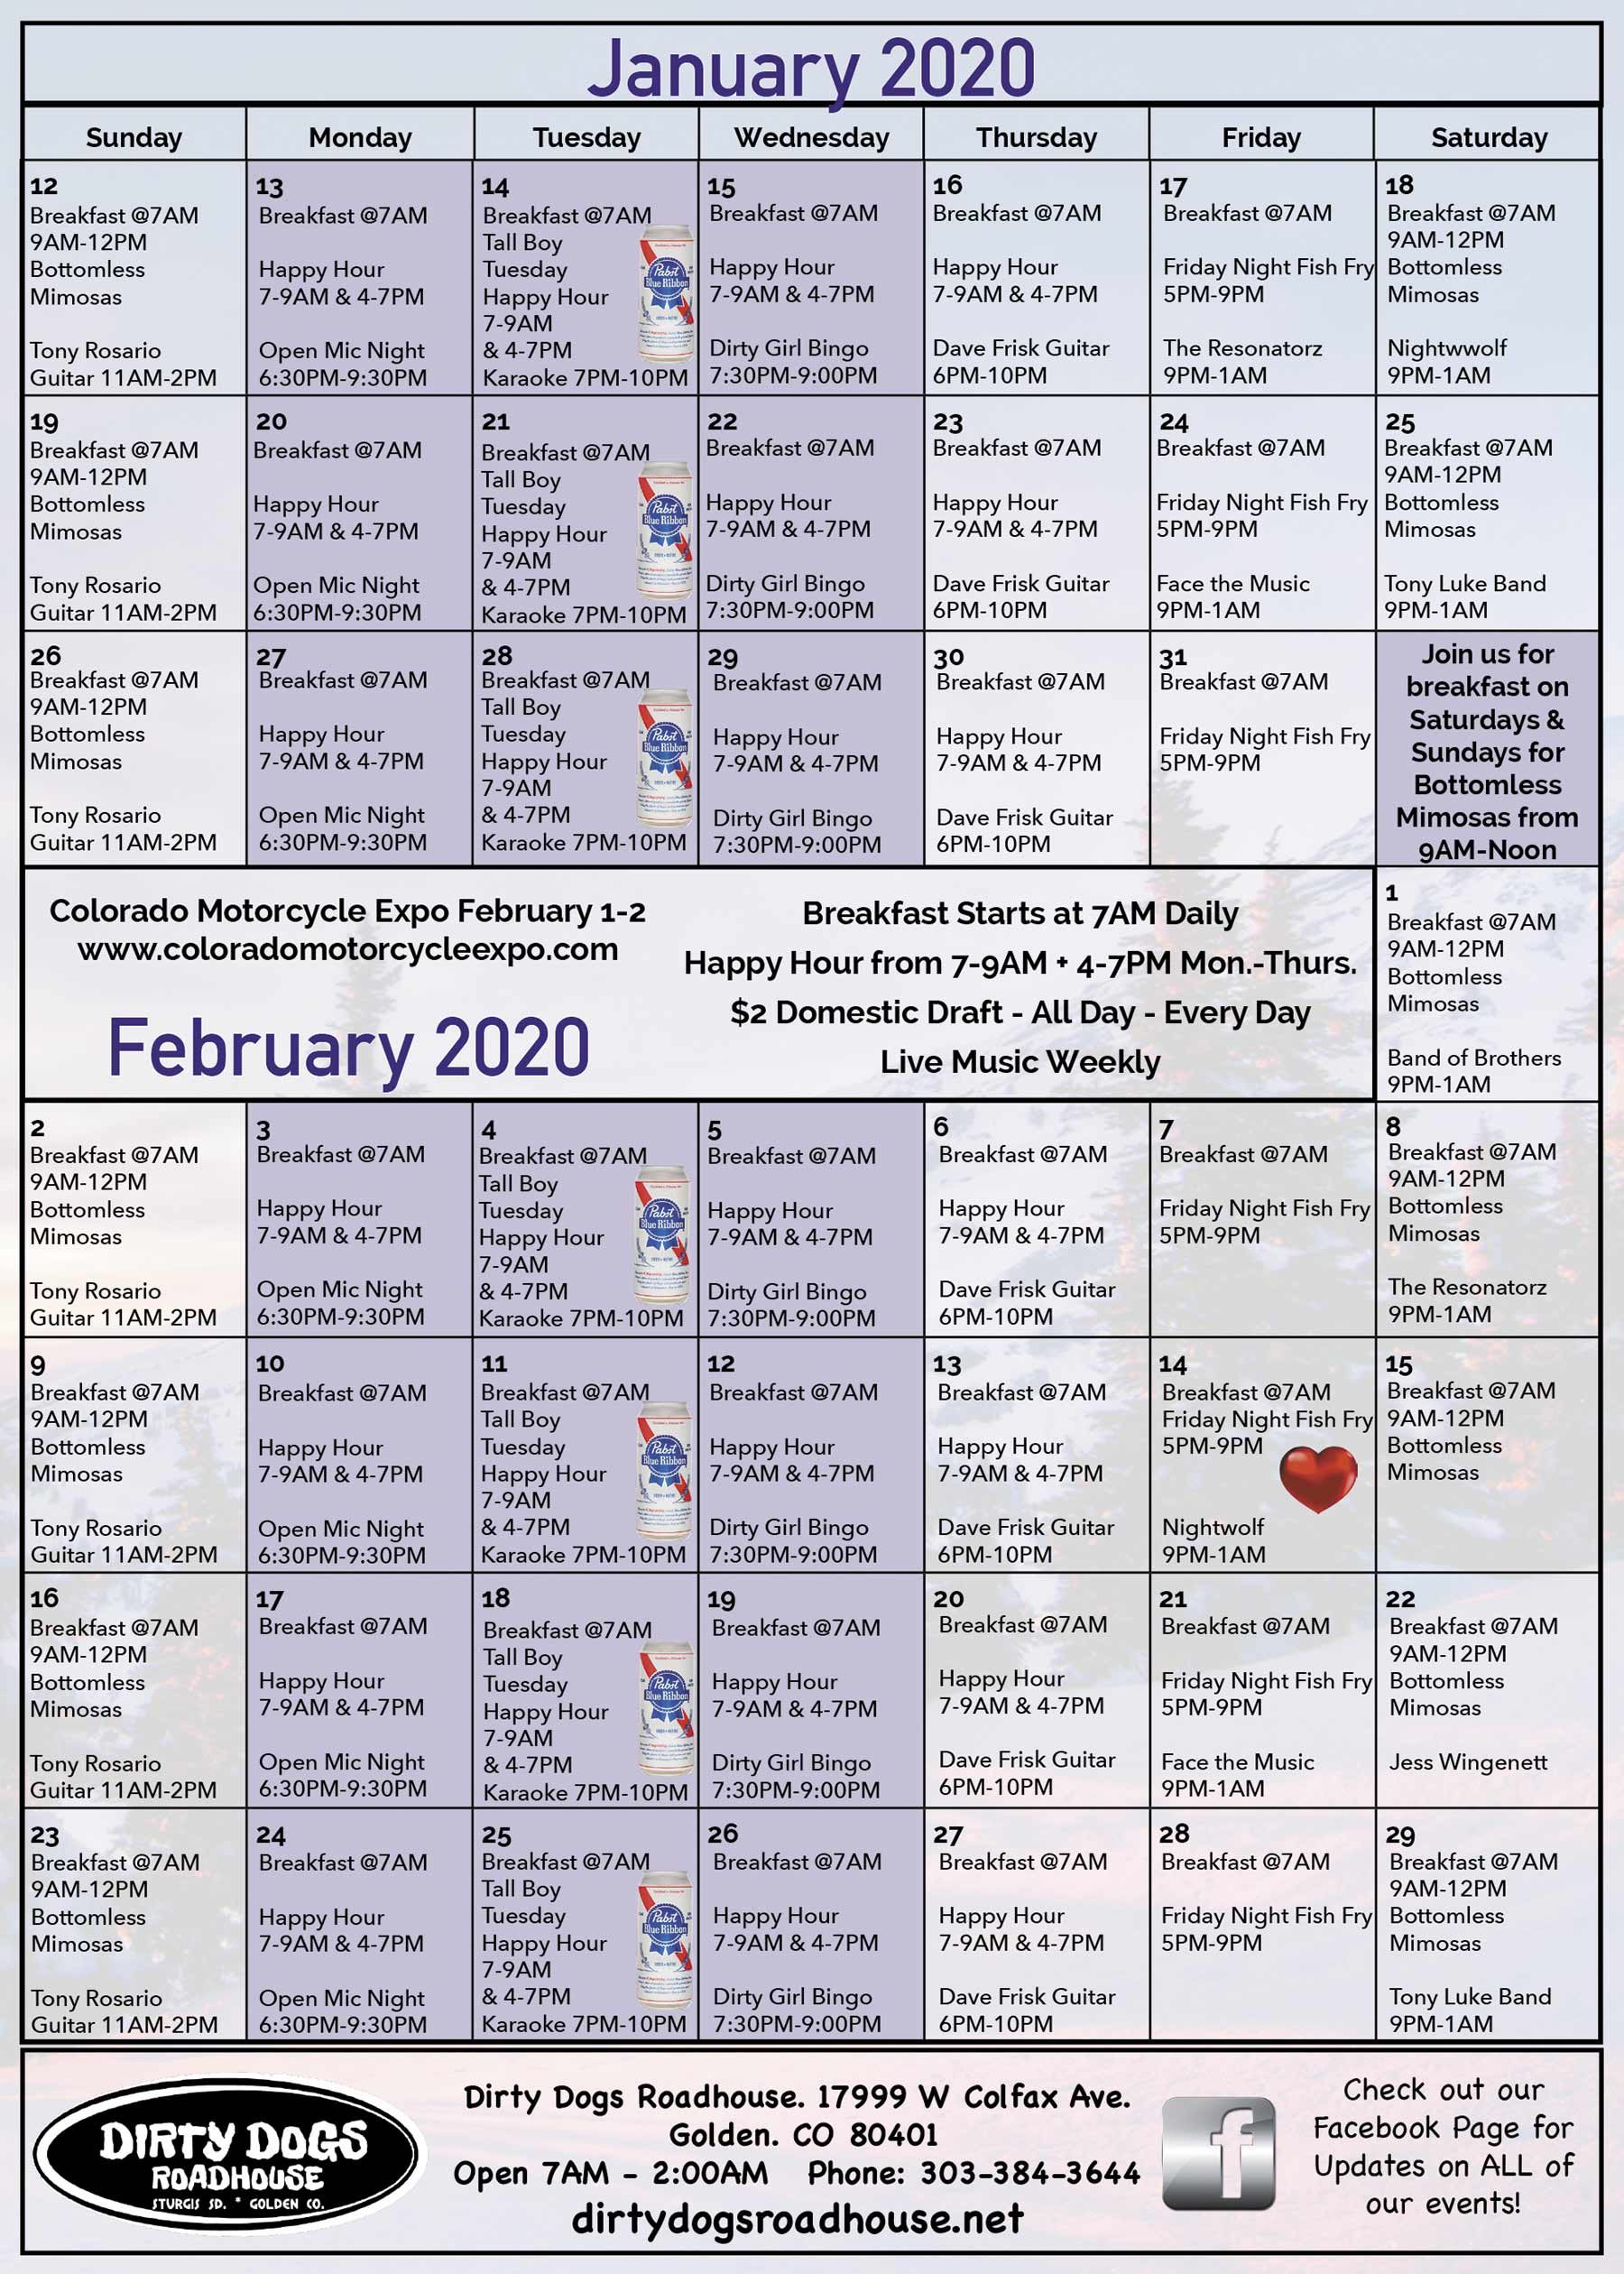 Dirty Dogs Calendar: January 2020